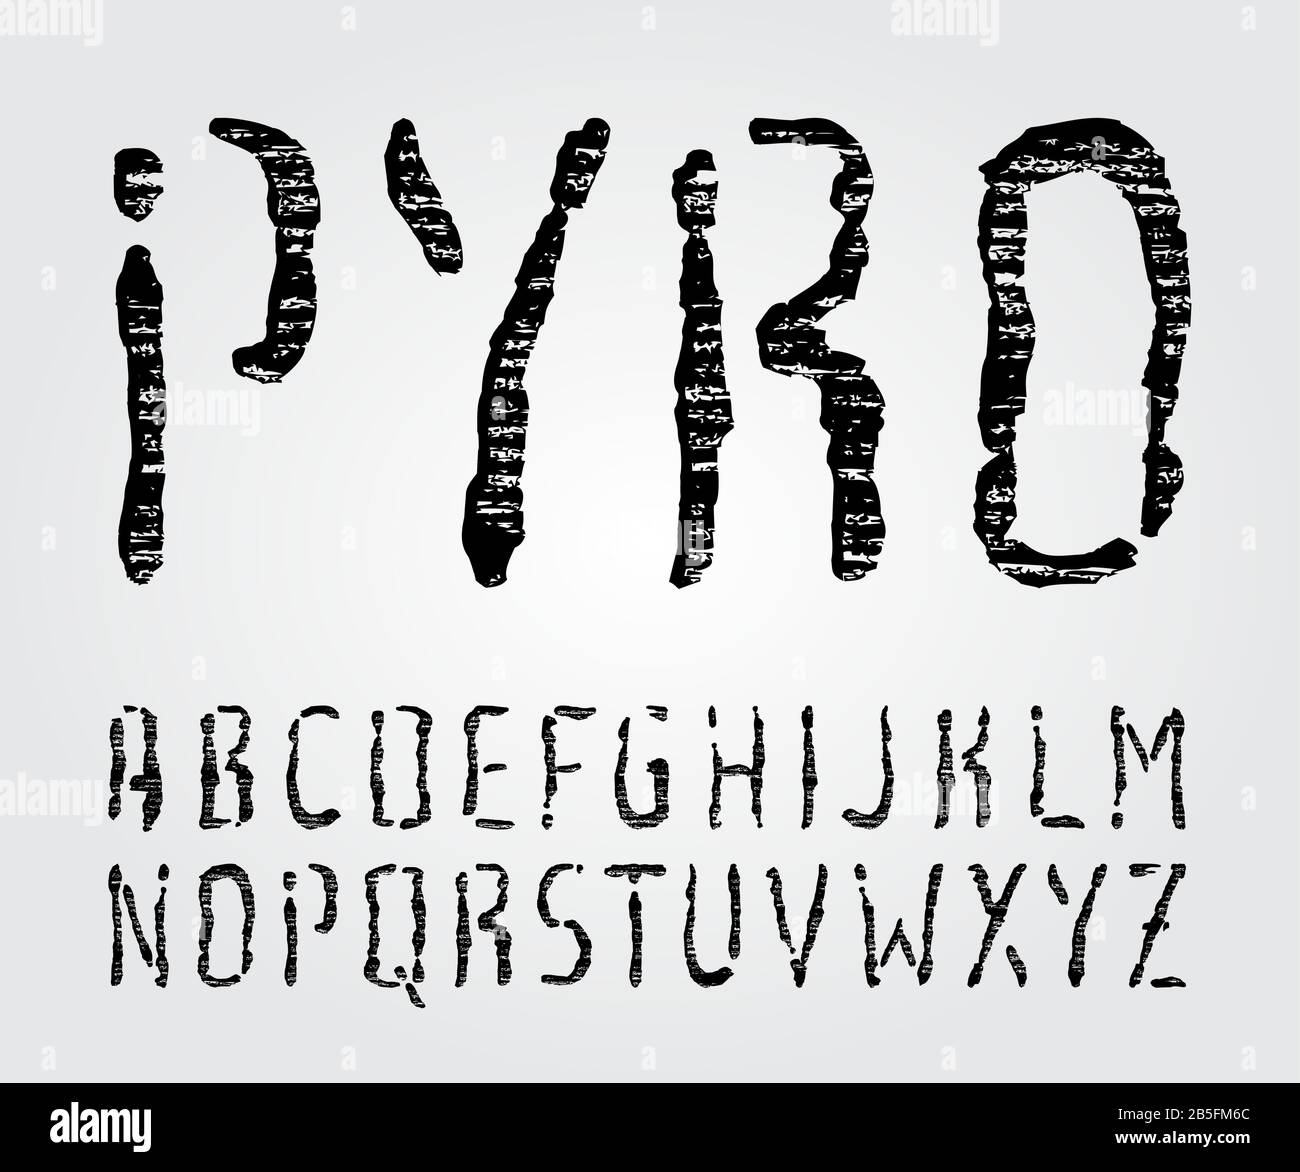 Type De Pyrographie Du Bois (Police Vectorielle). Lettre Press, Stamp, Wood Relief, Cut And Carving (Typographie Texturée). Illustration de Vecteur